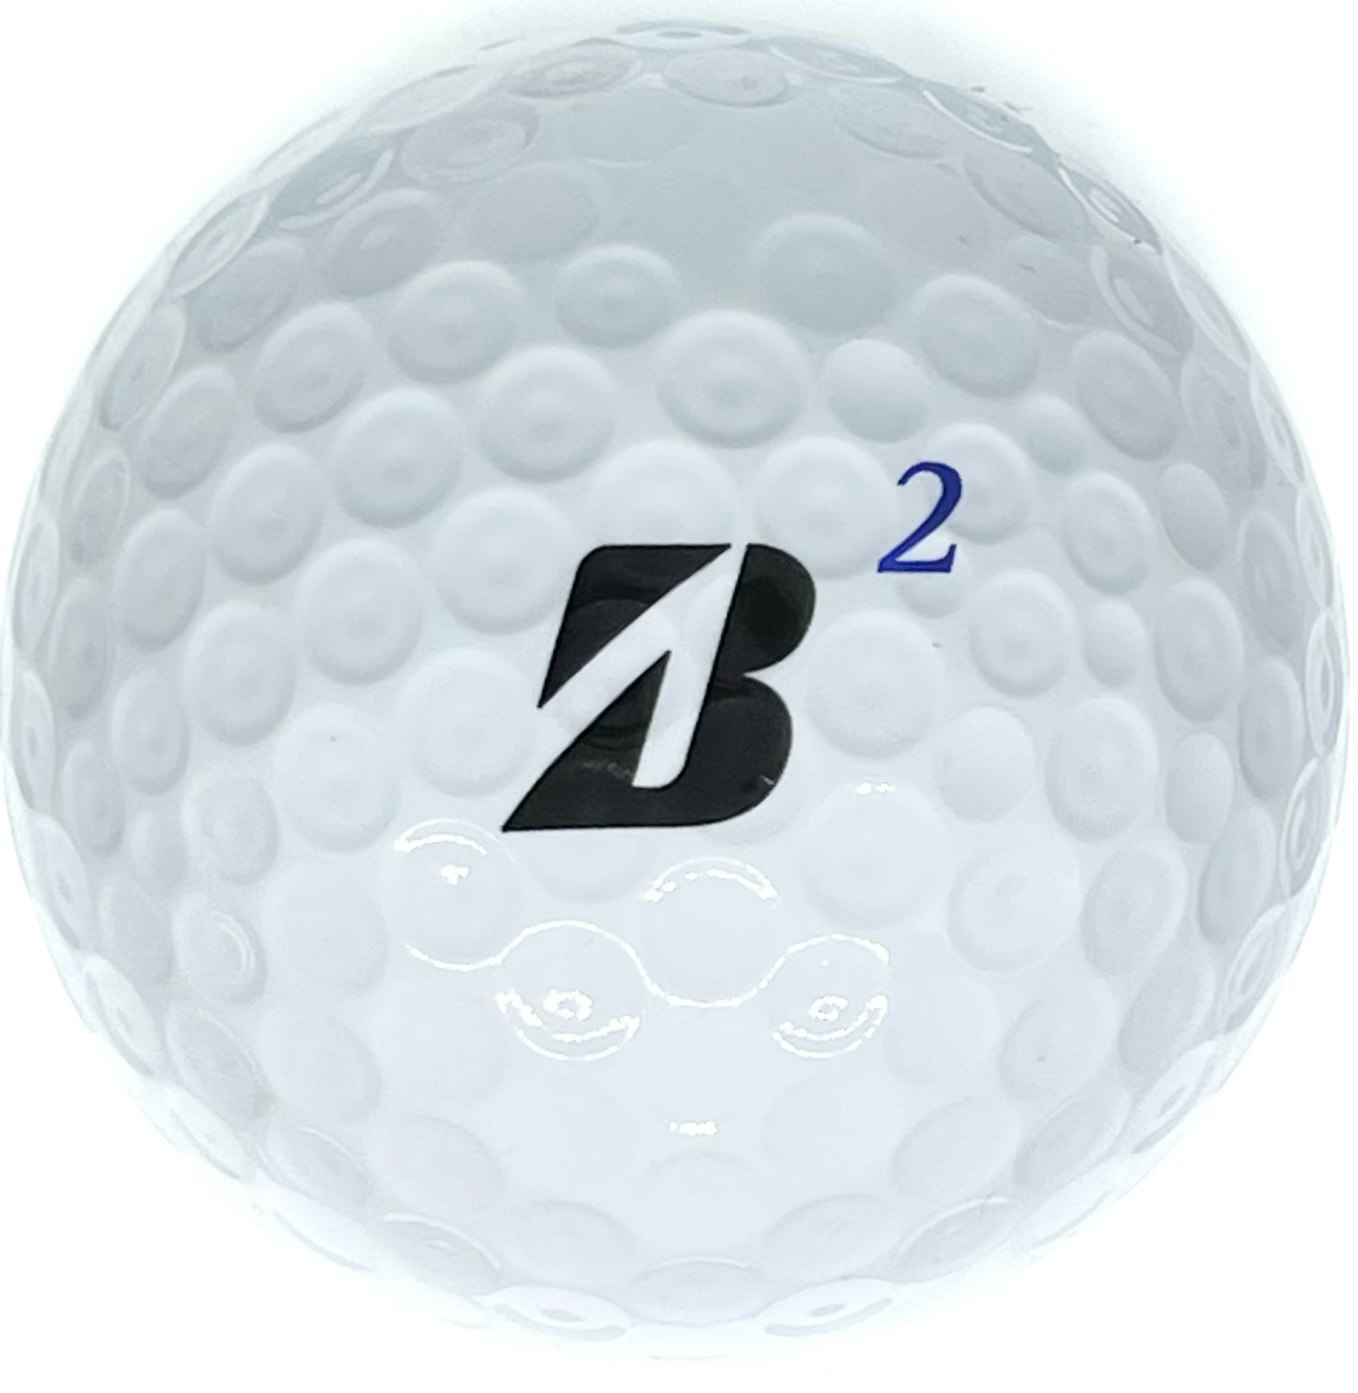 Detta är en vit golfboll, Bridgestone Tour B330-S